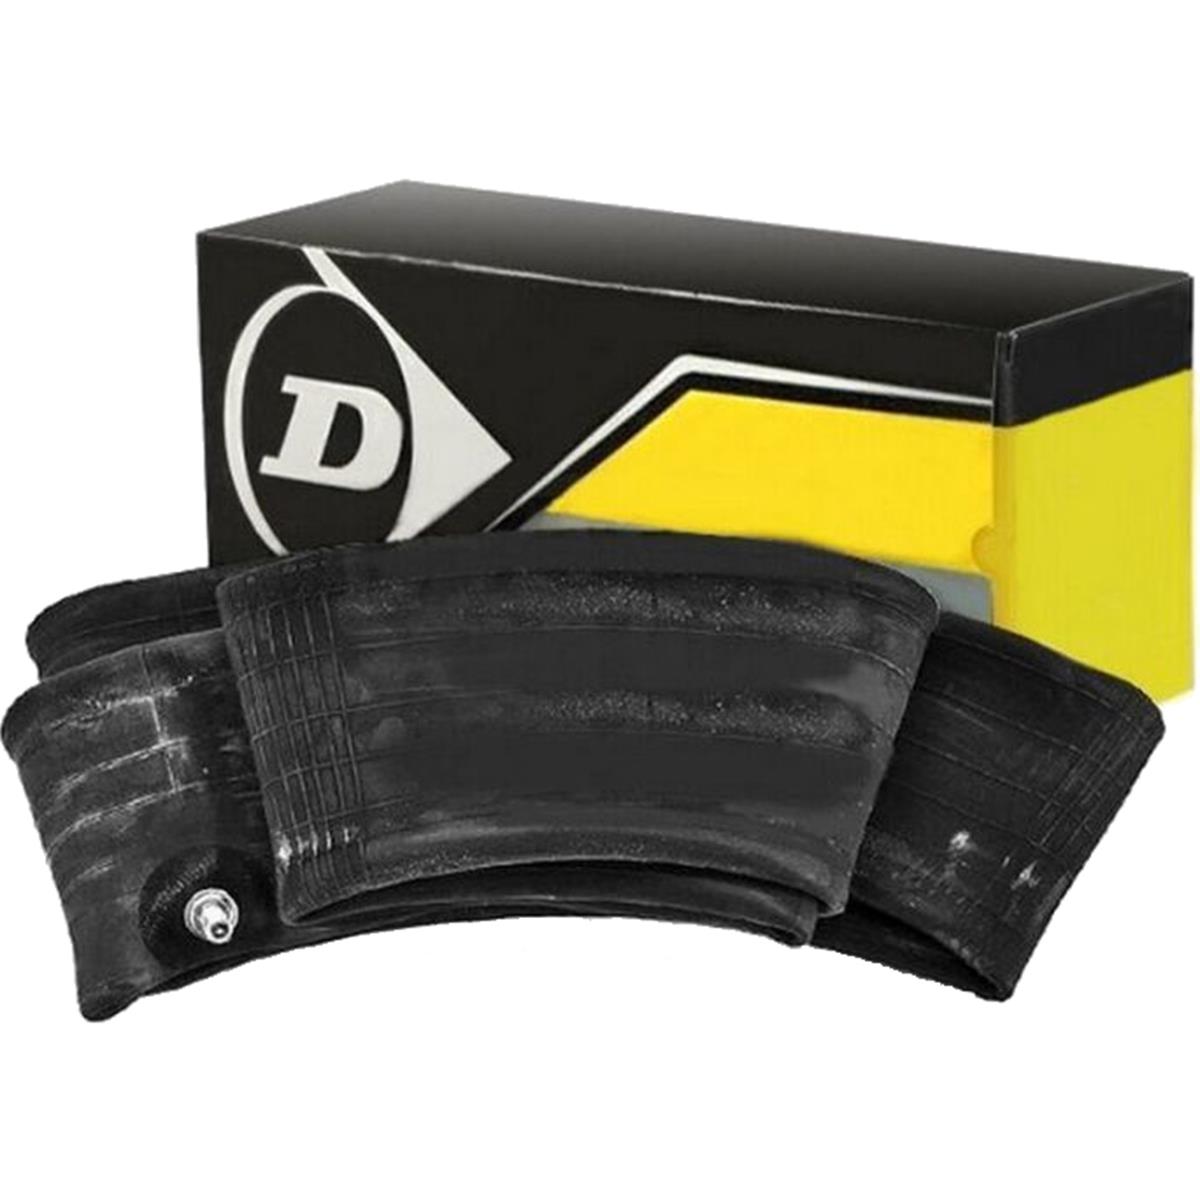 Dunlop Schlauch  2.50-14, 60/100-14, 80/80-14, TR4